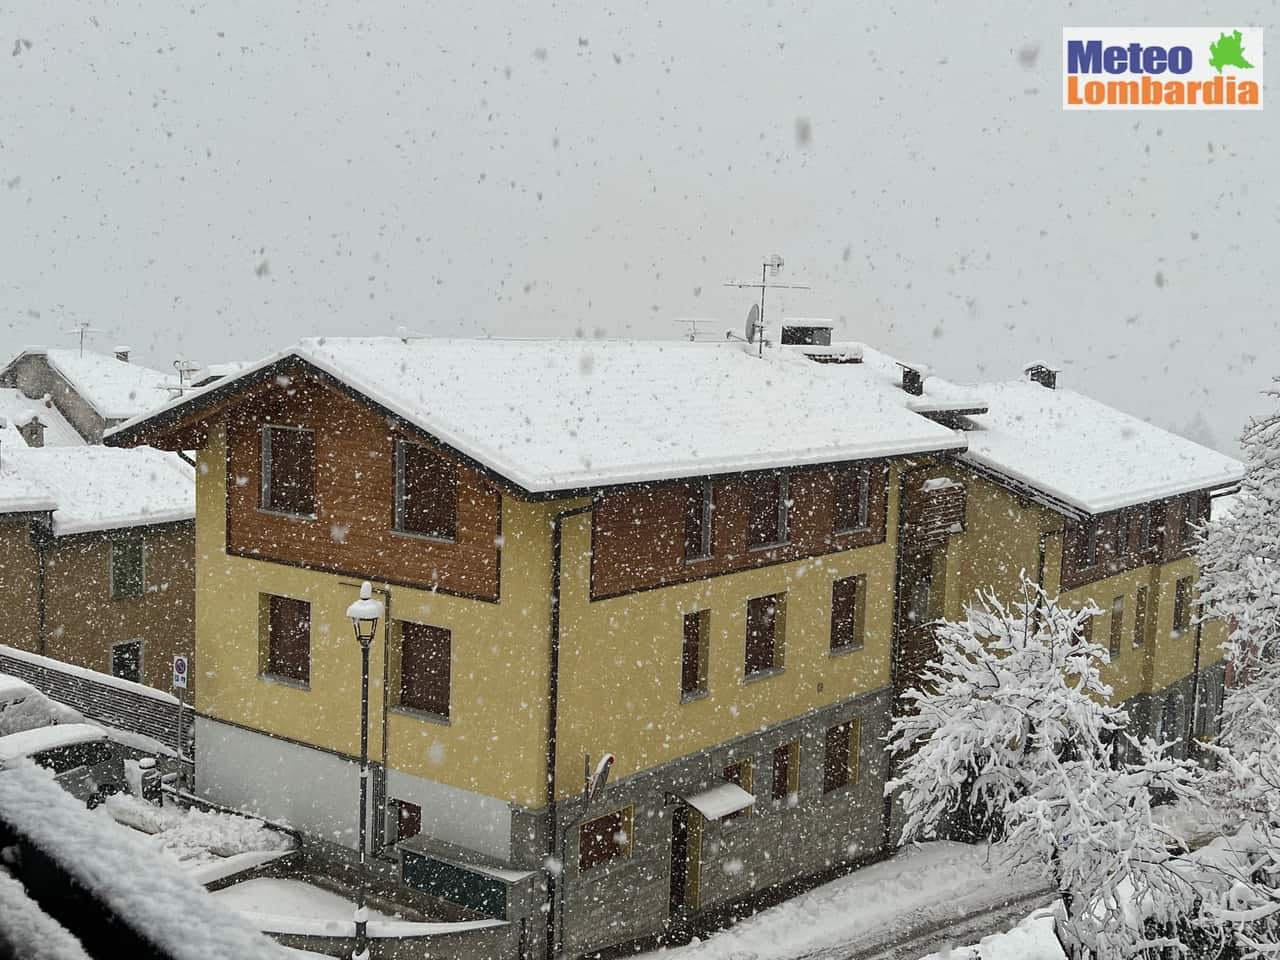 meteo lombardia1 - Meteo Lombardia, una nevicata normale in un Inverno anomalo